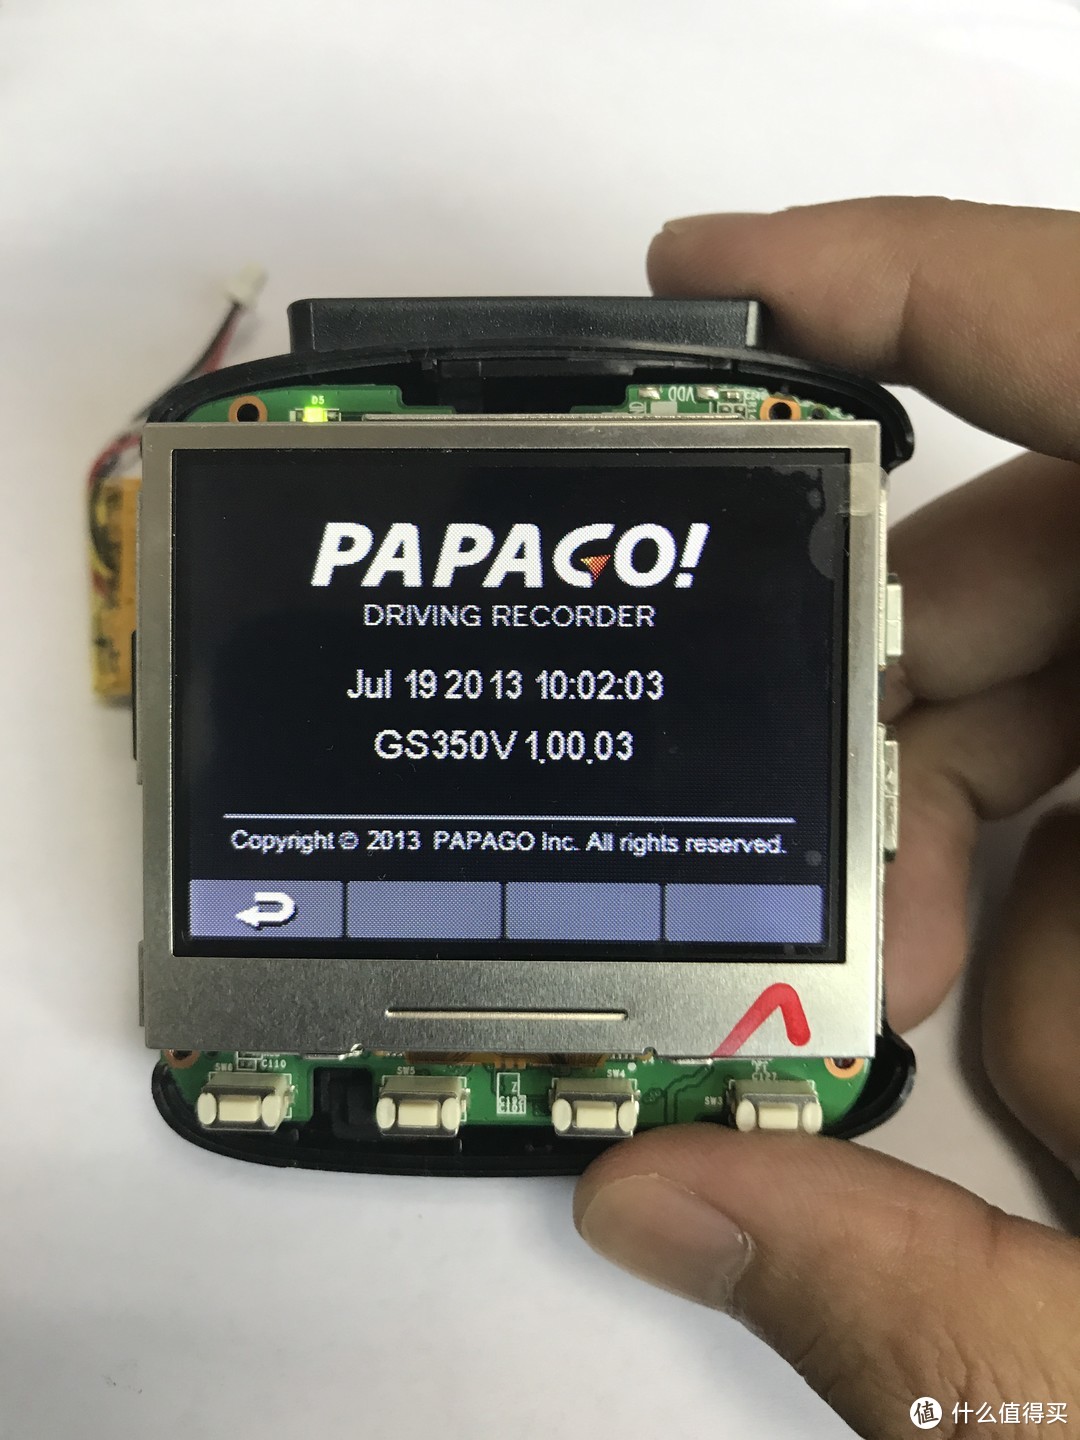 #原创新人#动动手让旧设备继续发热 — PAPAGO!拆机换电池